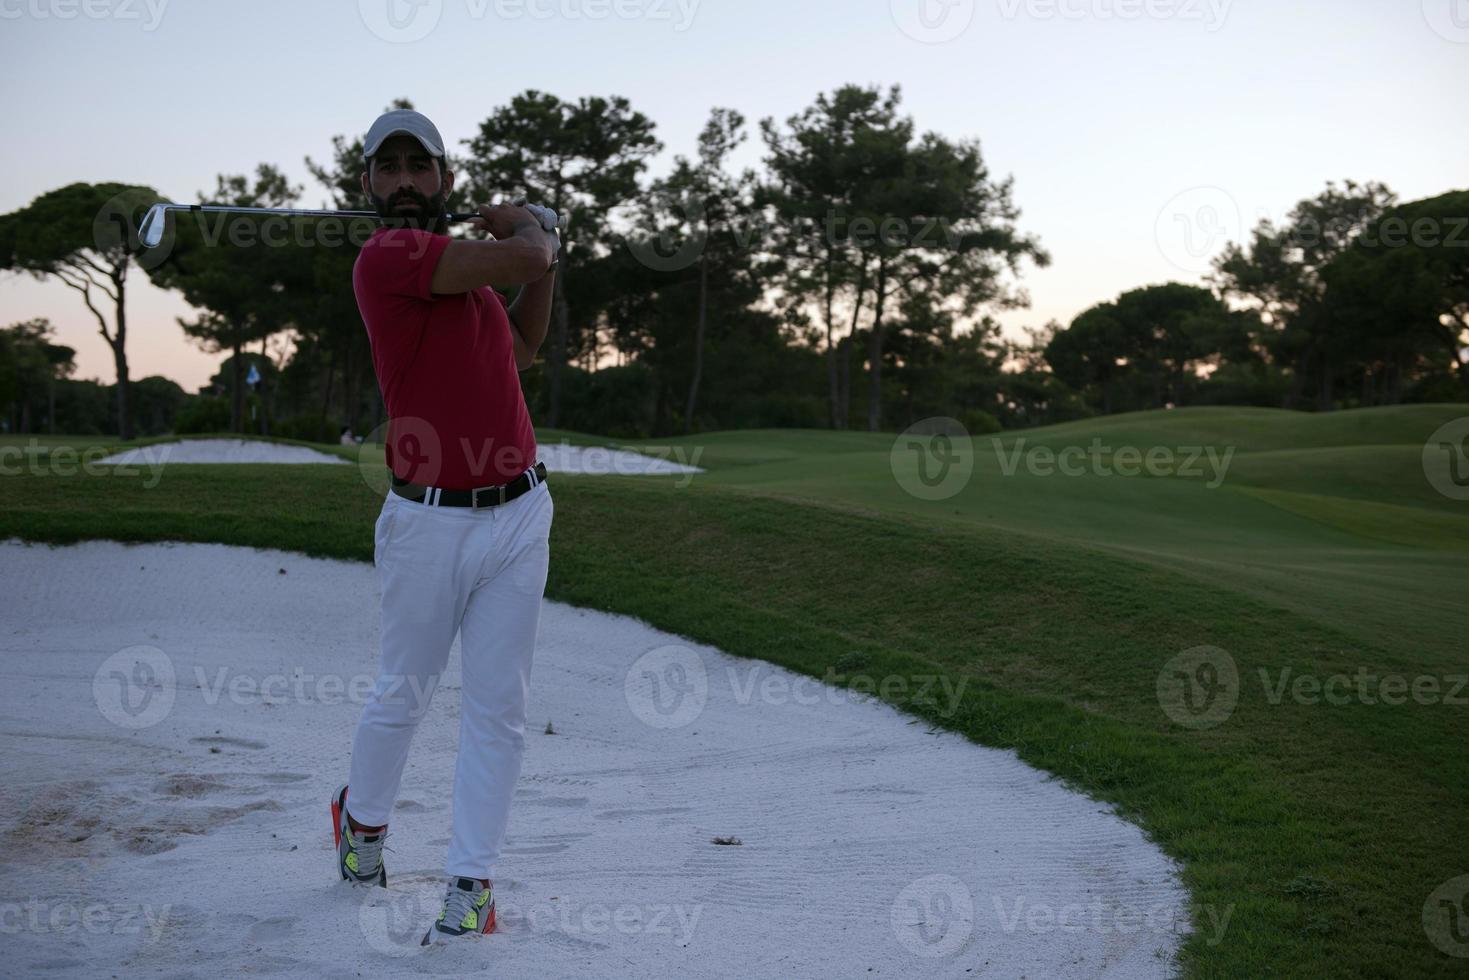 golfeur frappant un bunker de sable tourné au coucher du soleil photo